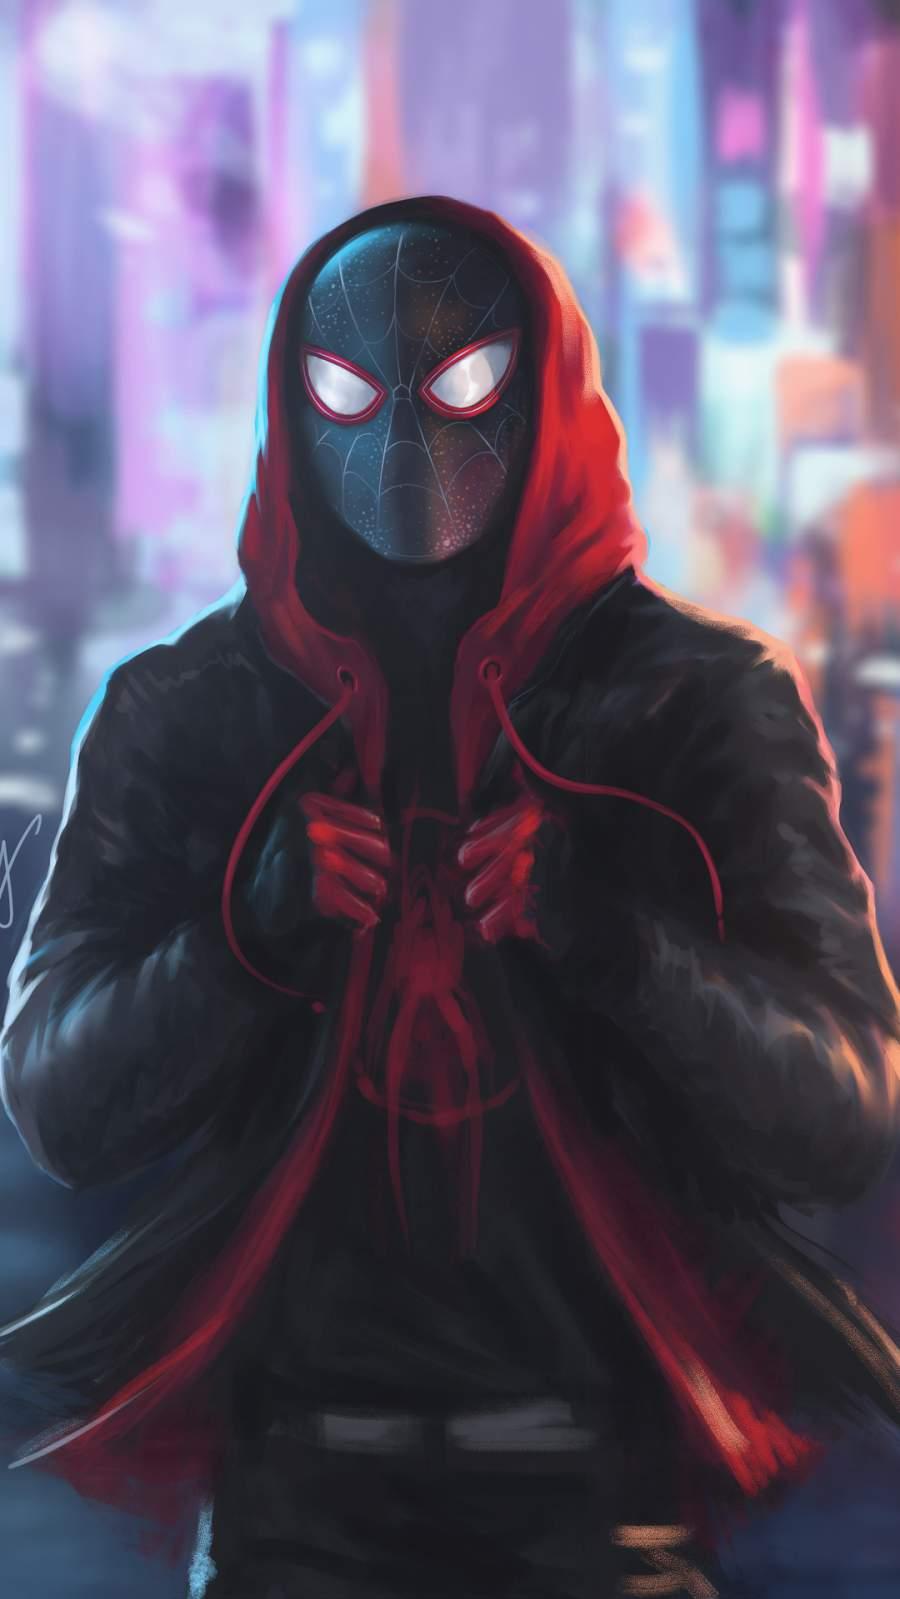 Miles Morales Spiderman In Hoodie iPhone Wallpaper